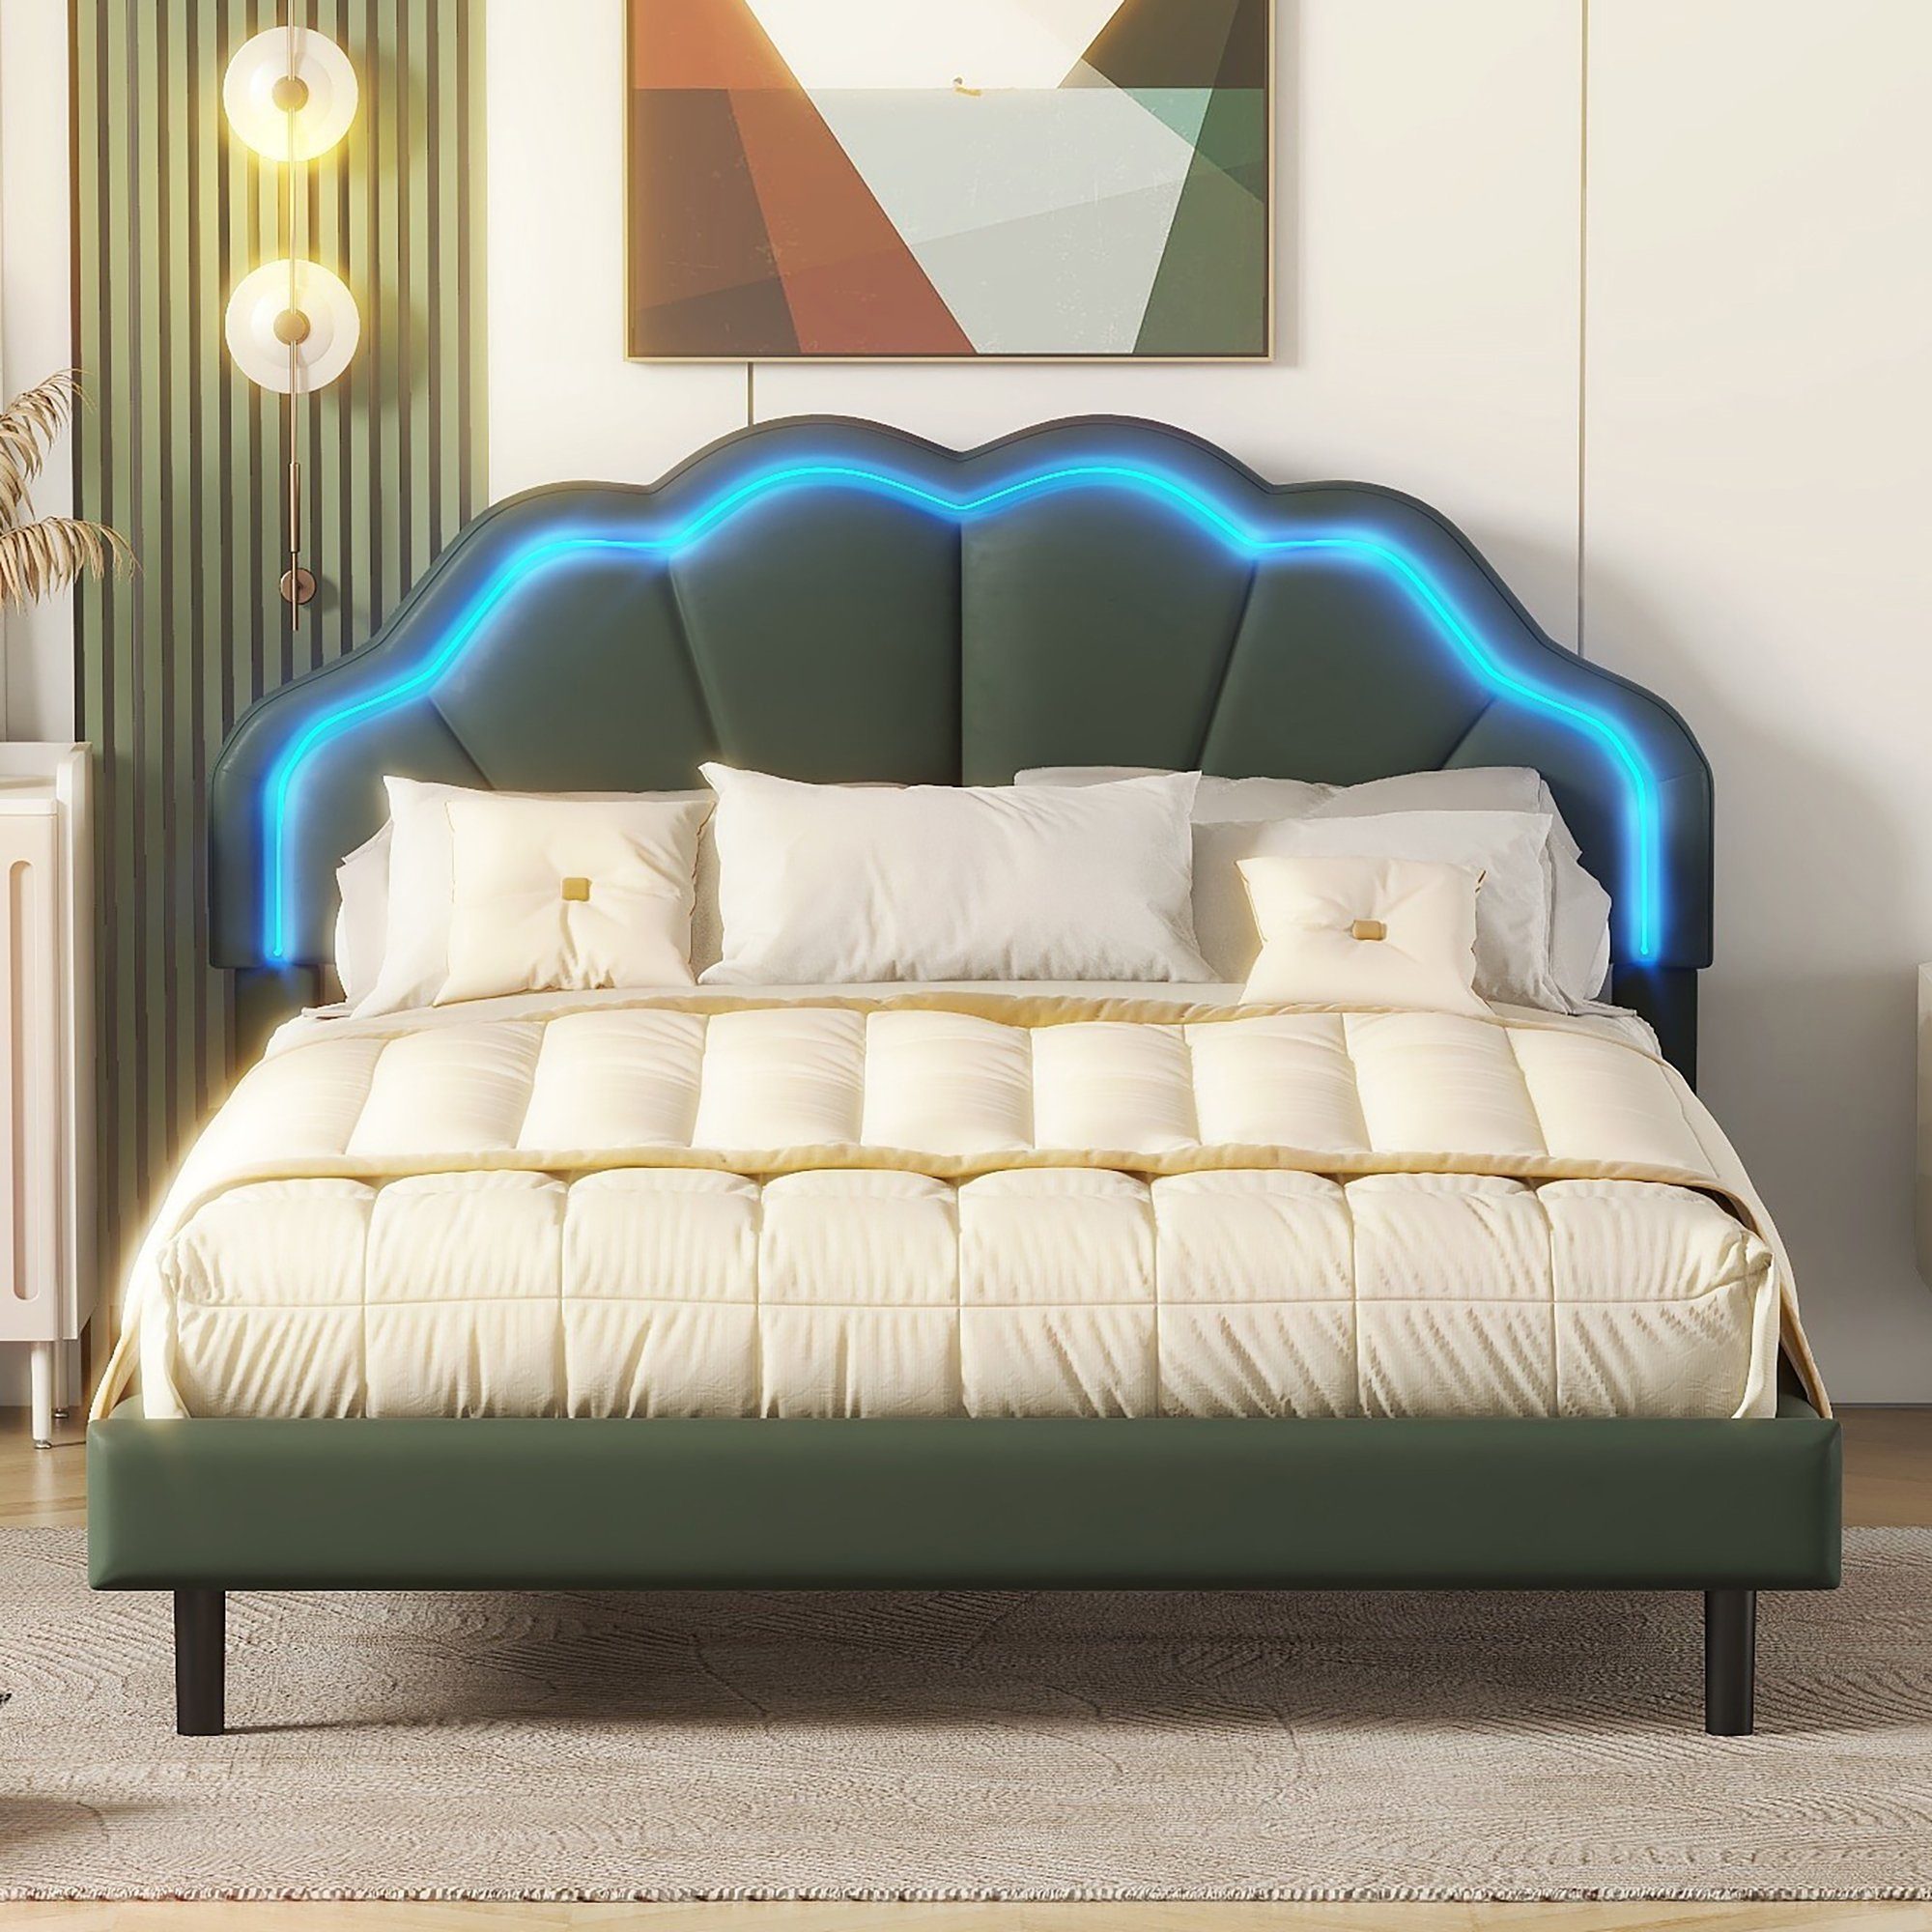 OKWISH 140*200cm), Polsterbett grün flächiges Doppelbett und Schwebebett Kopfteildesign mit Bett ohne Rahmen, Matratze LED-Leuchten Funktionsbett Doppelbett-Gästebett, (Gepolsterter